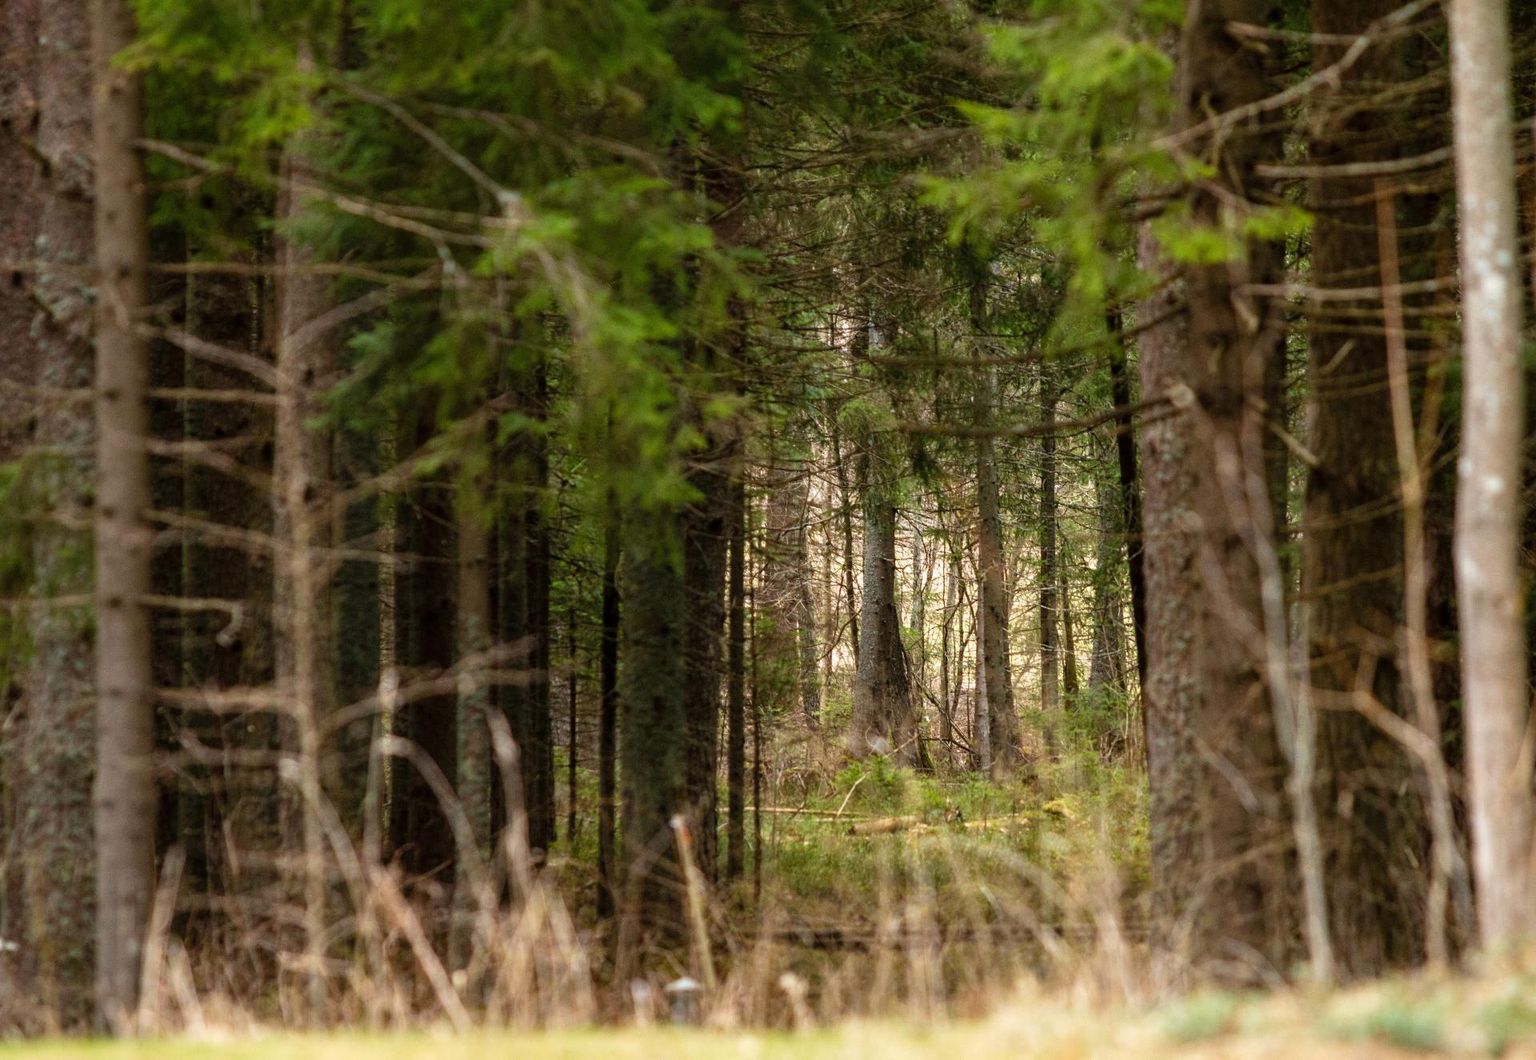 Üks suurimaid probleeme kuusemetsas on puid hävitav ürask, keda viimastel aastatel on Eesti metsades väga palju.